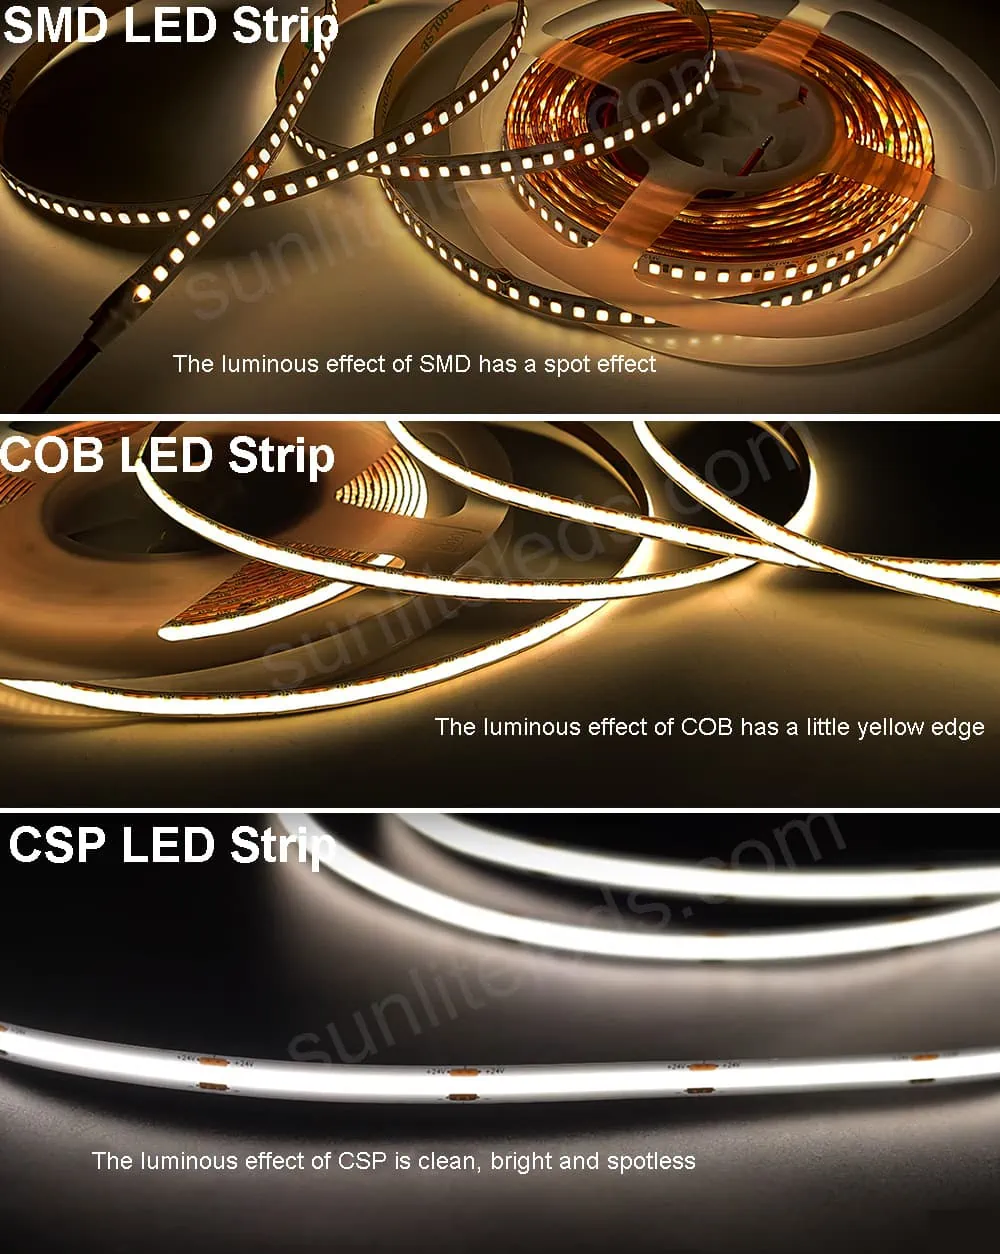 Luminous effect SMD LED strip vs COB LED strip vs CSP LED strip